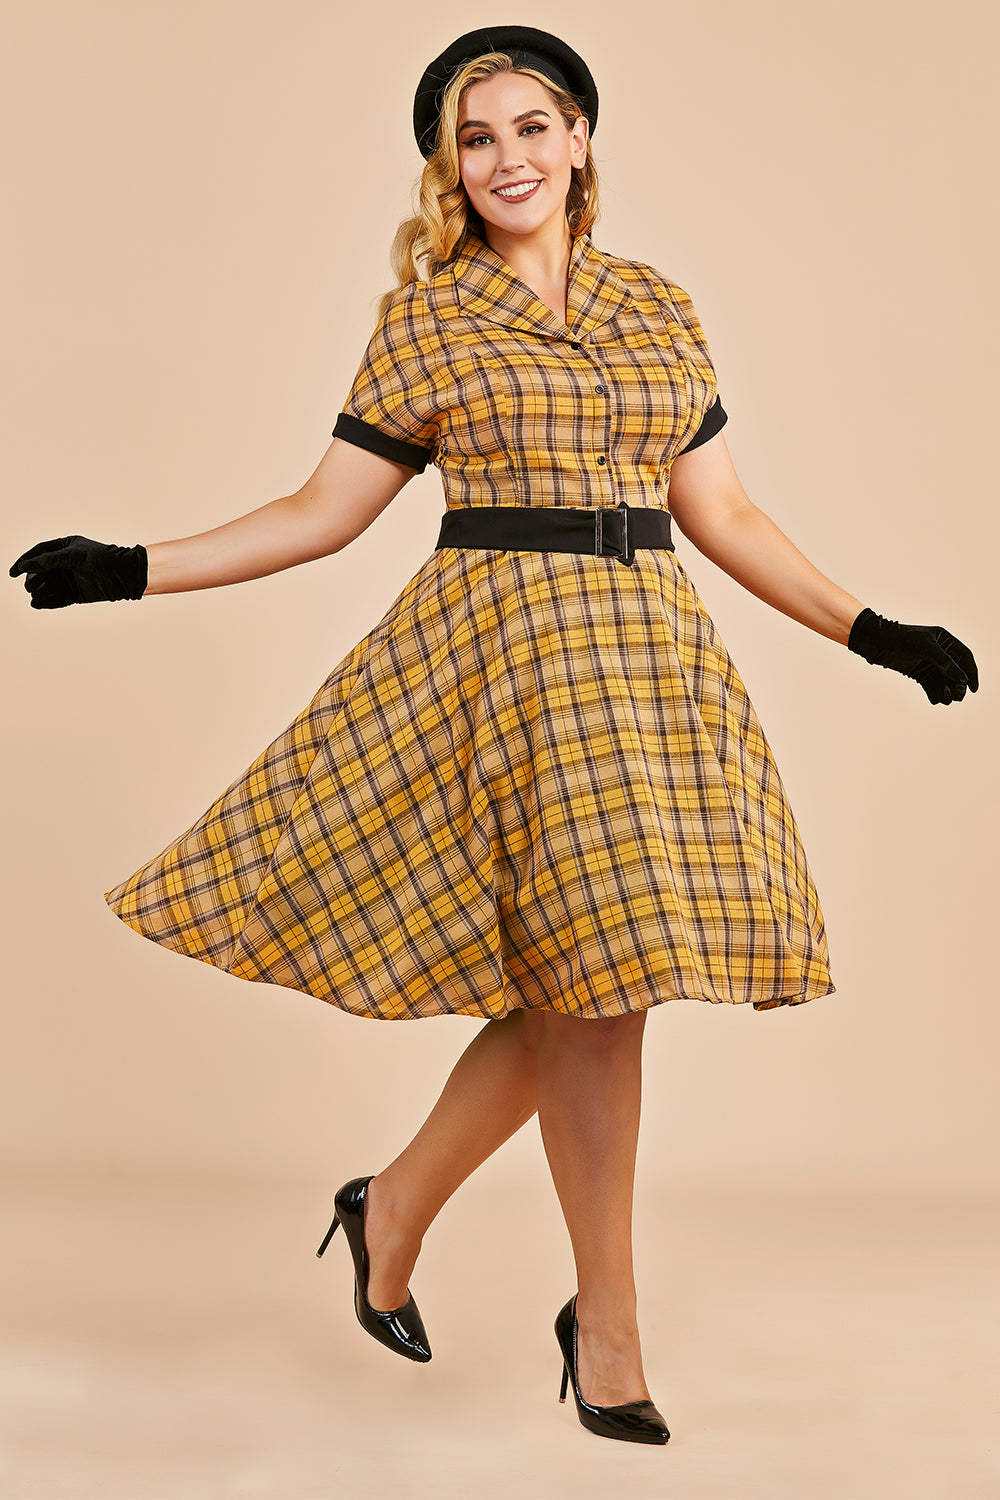 Plaid 1950s Vintage Dress